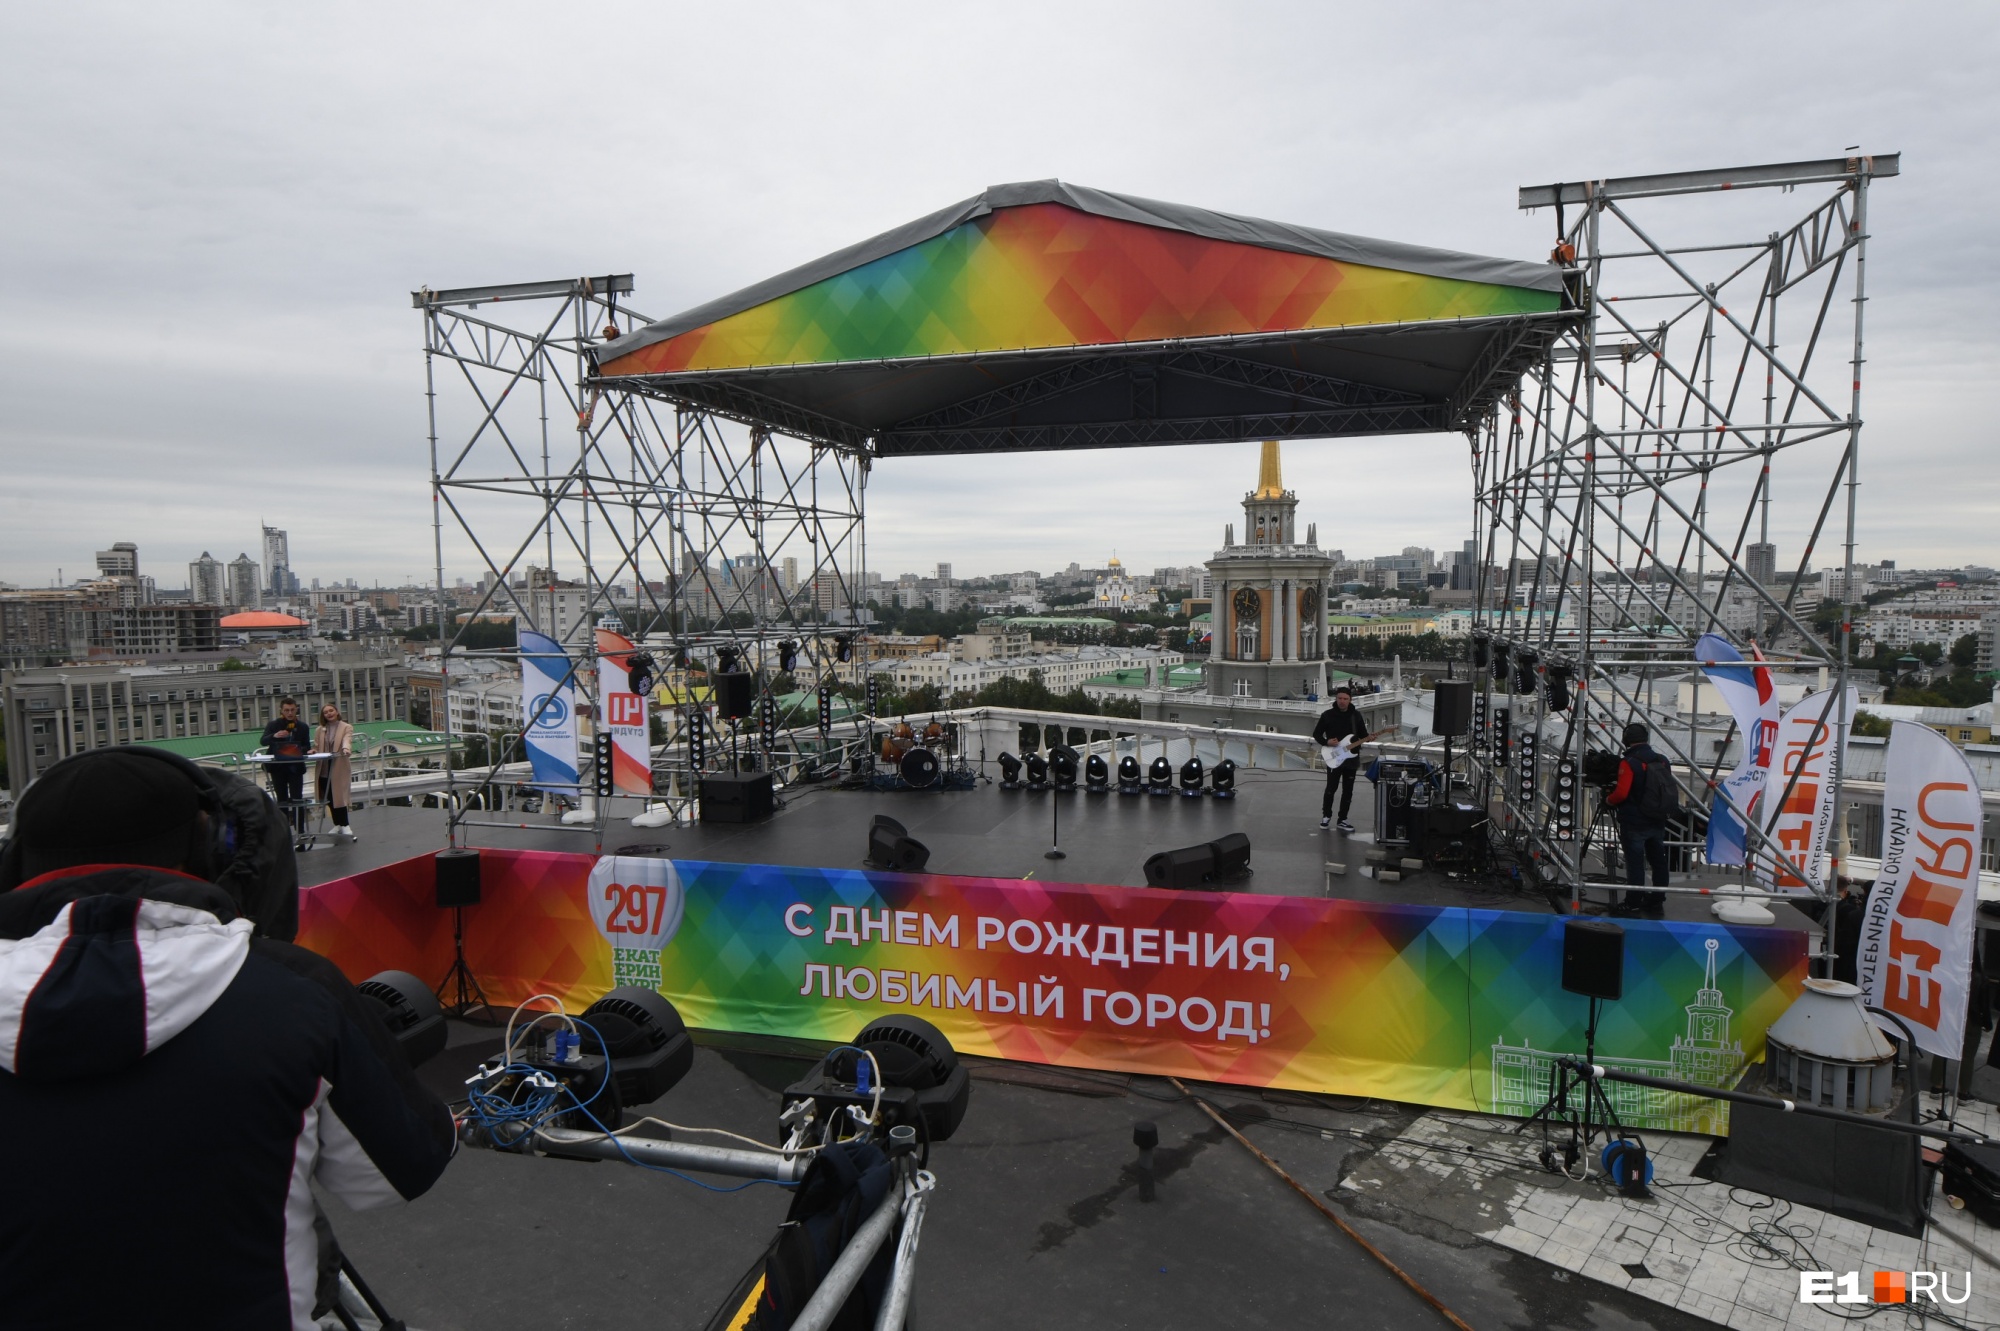 Как пройдет День города в этом году? В мэрии Екатеринбурга определились с программой праздника